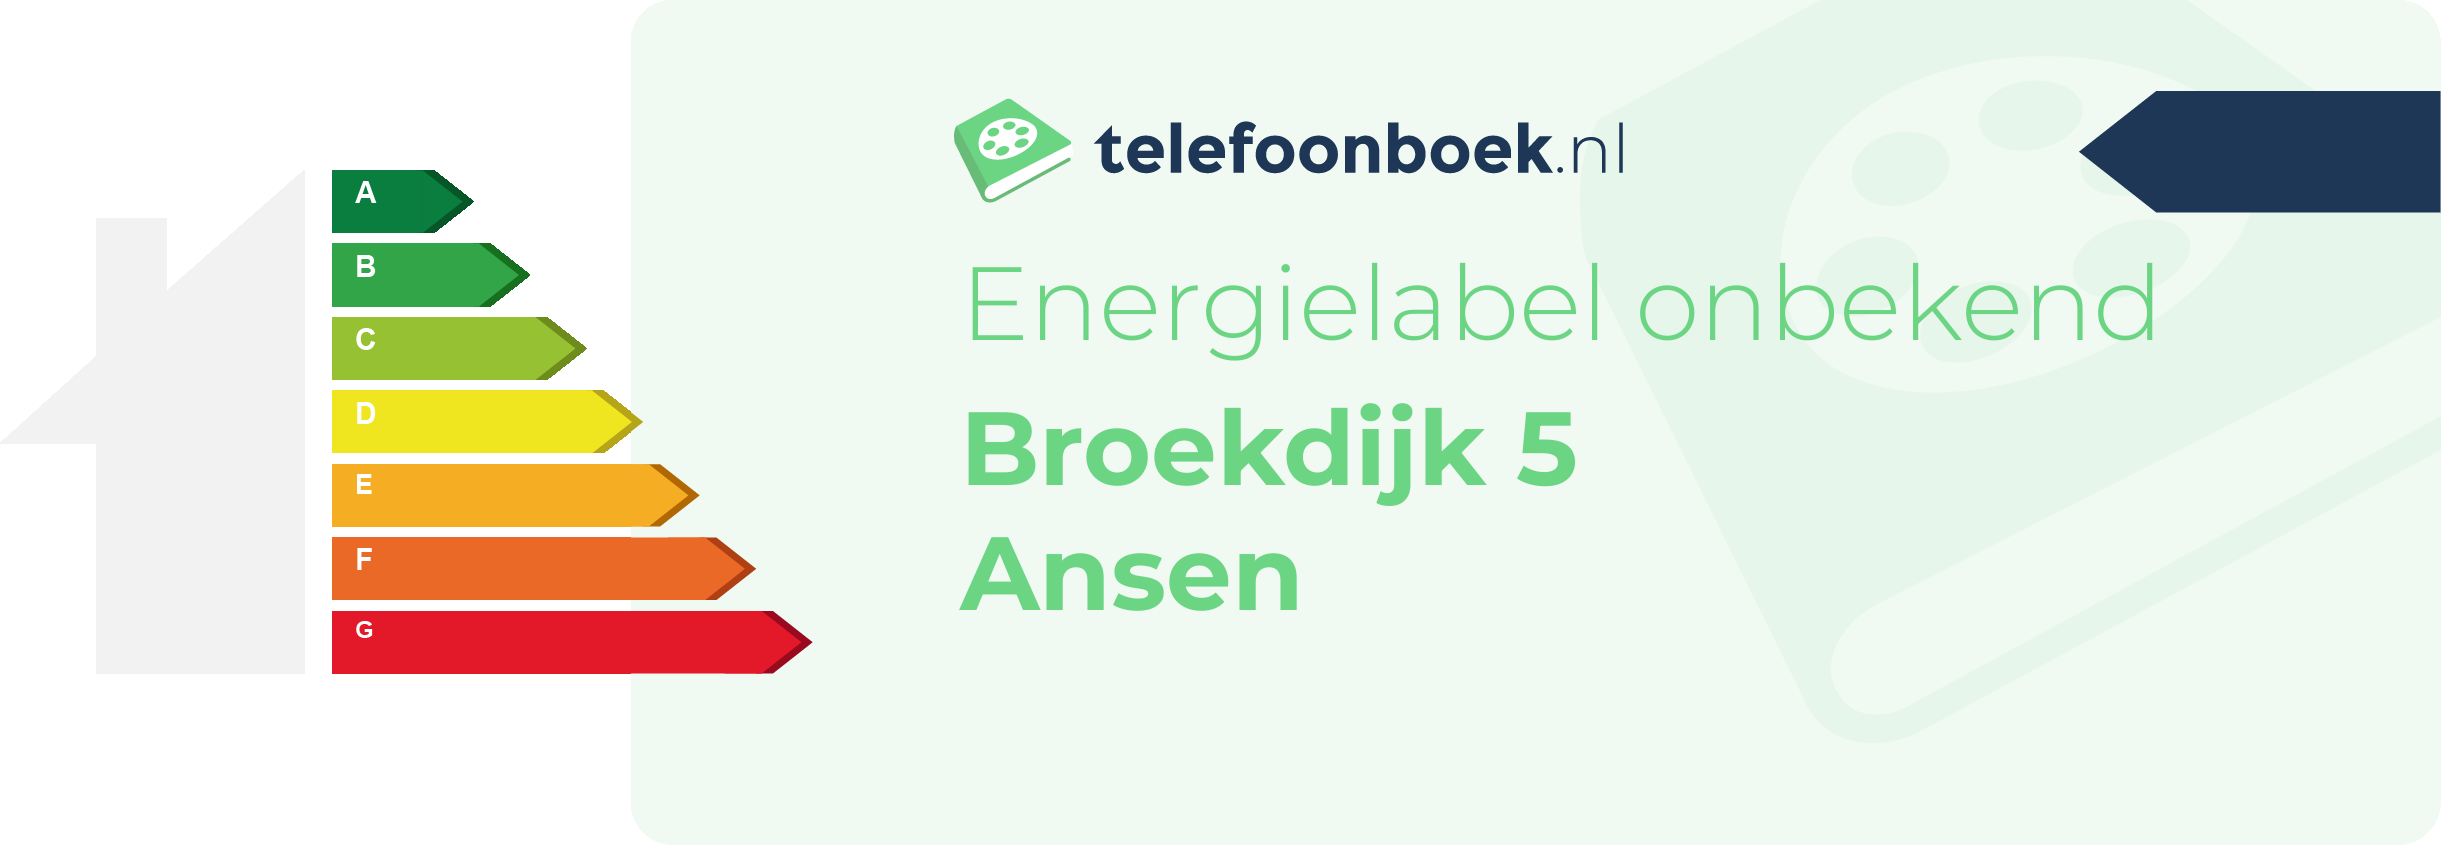 Energielabel Broekdijk 5 Ansen